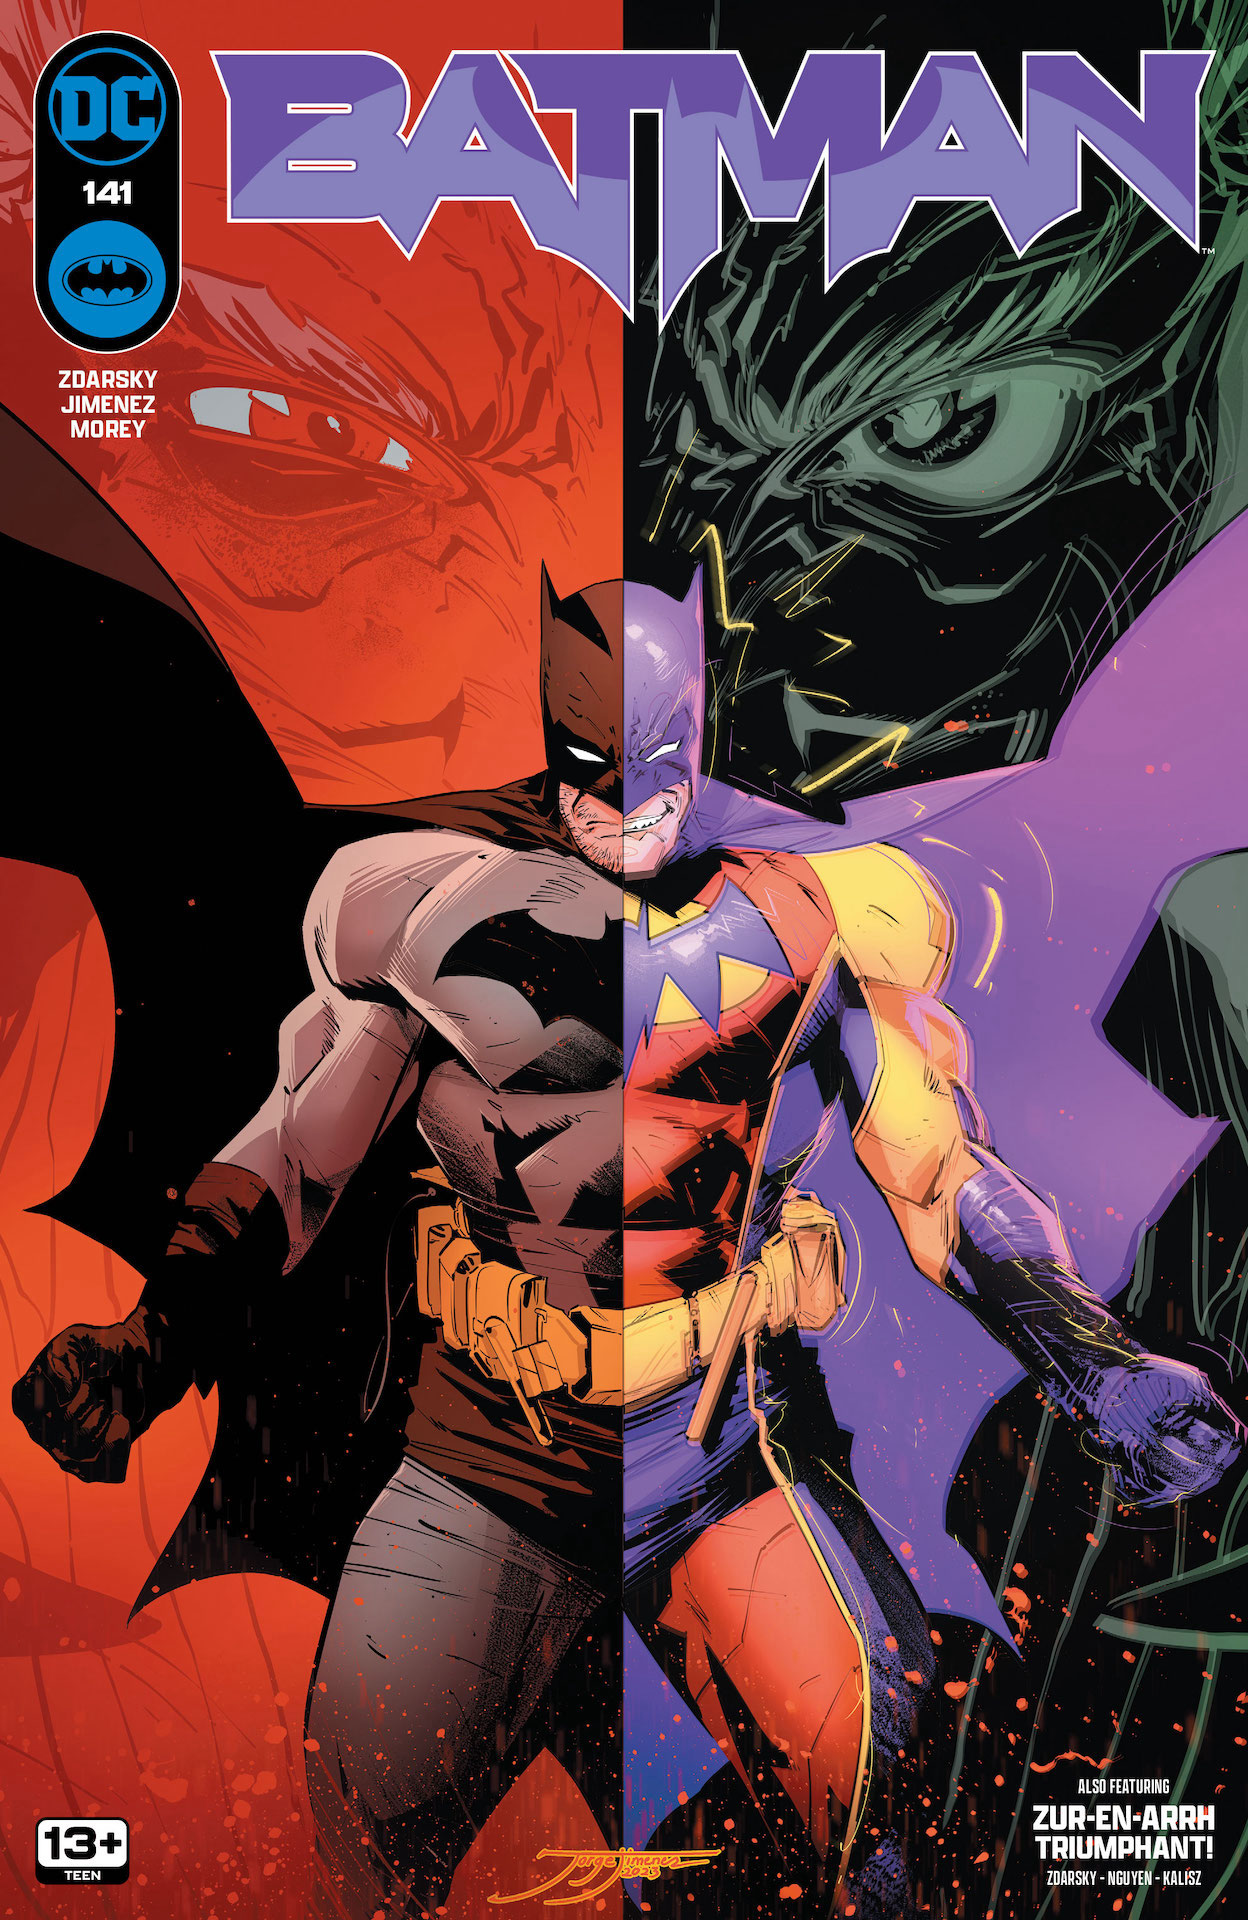 DC Preview: Batman #141